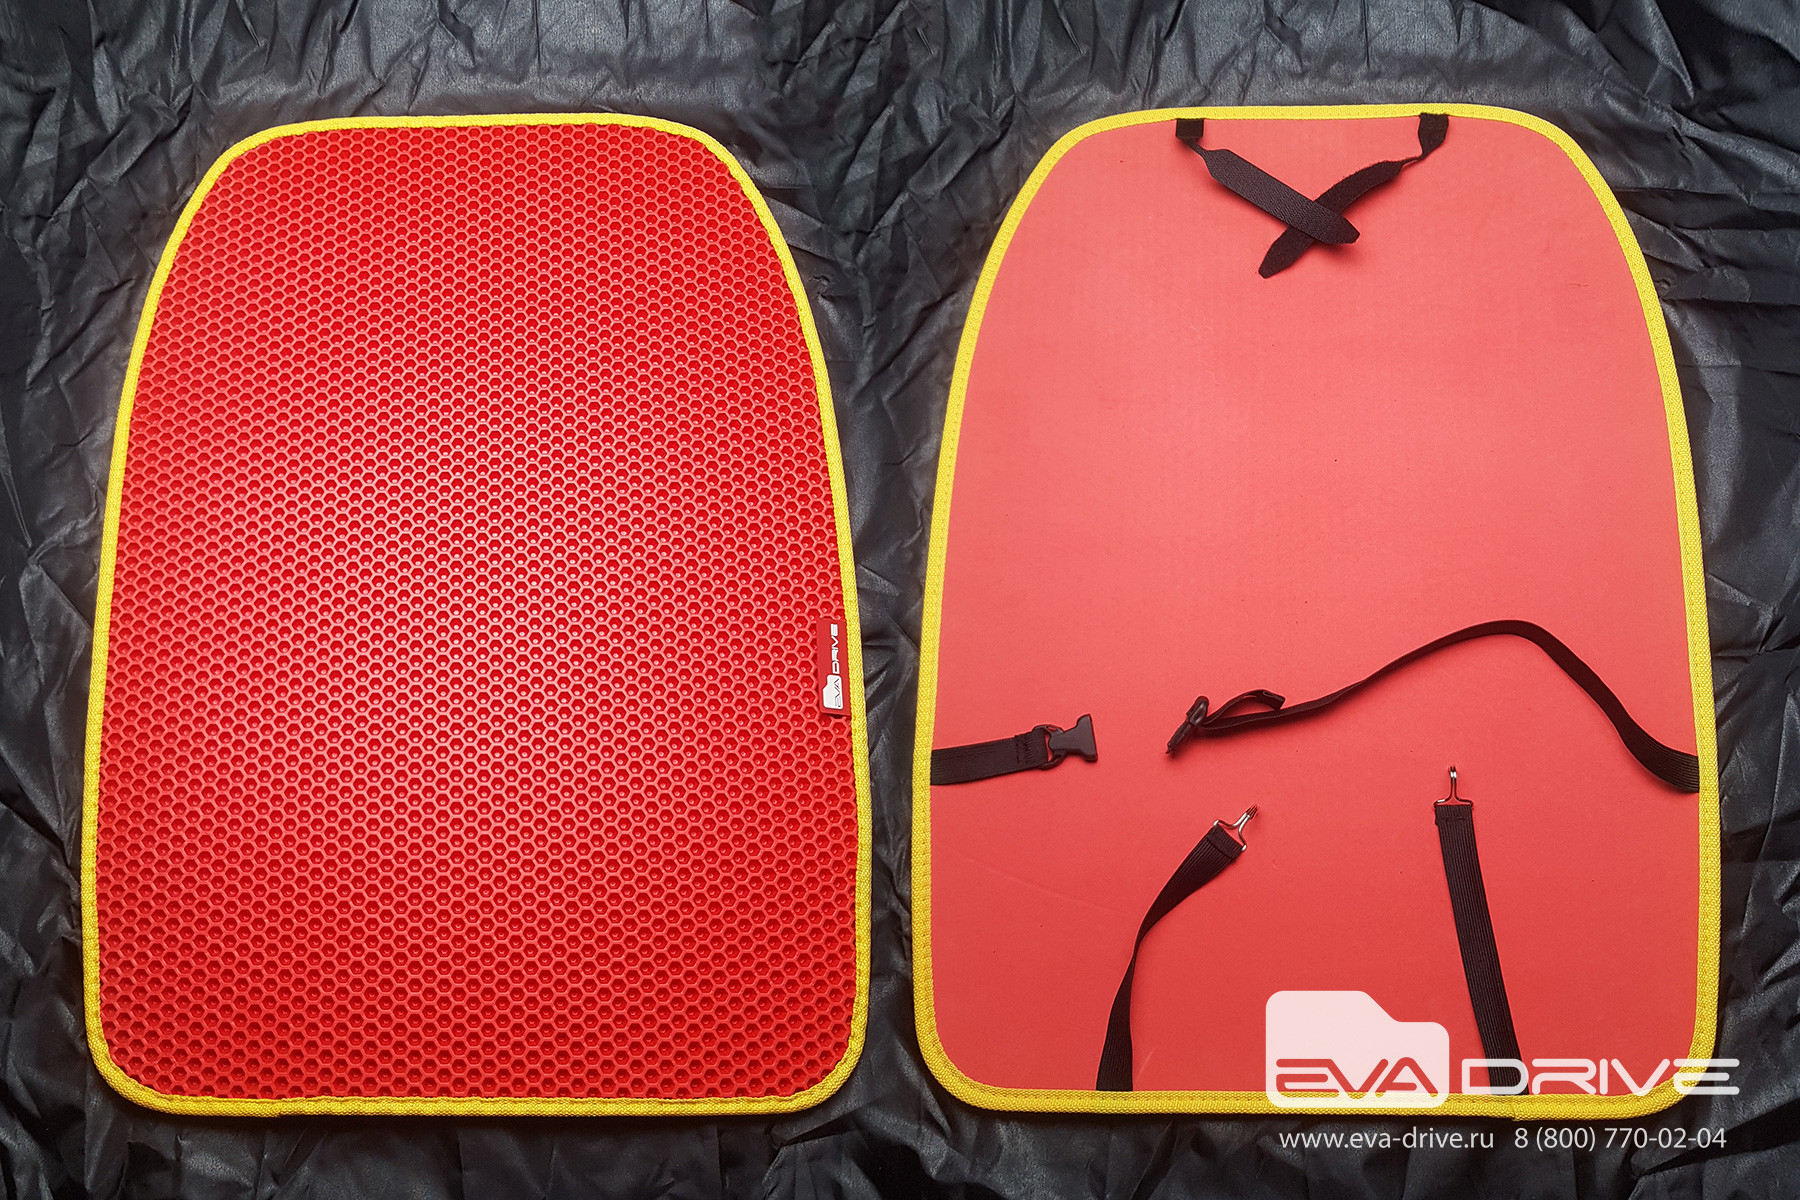 Коврики Eva-Drive для автомобилей Коврики на спинки передних сидений Коврик защитный на спинки передних сидений 